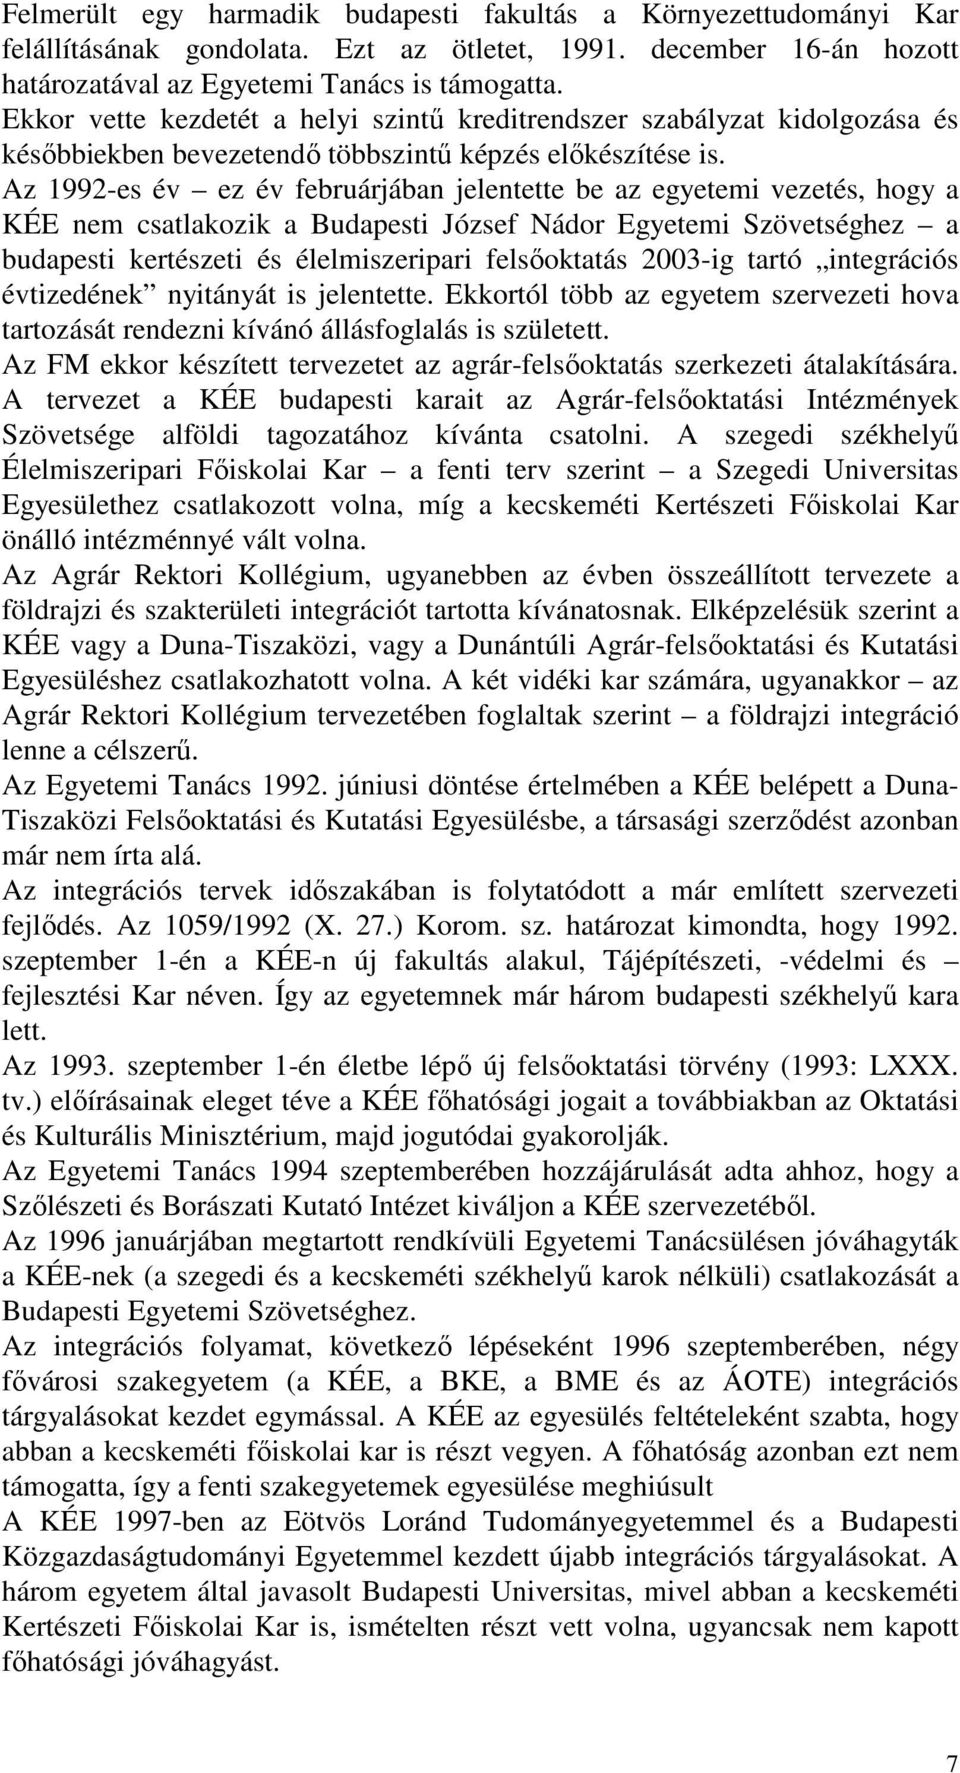 Az 1992-es év ez év februárjában jelentette be az egyetemi vezetés, hogy a KÉE nem csatlakozik a Budapesti József Nádor Egyetemi Szövetséghez a budapesti kertészeti és élelmiszeripari felsőoktatás